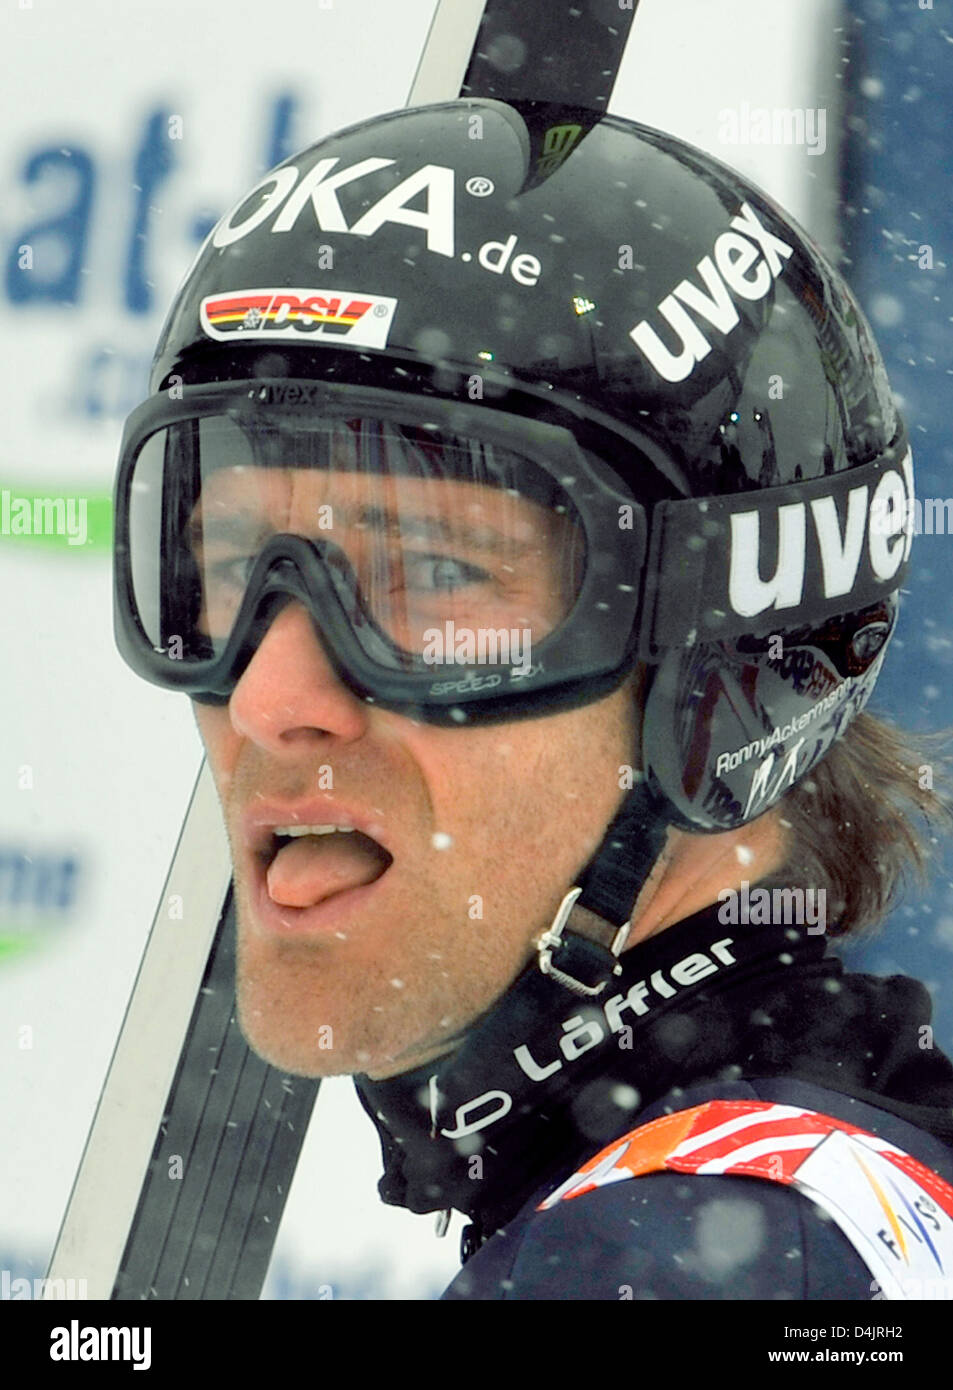 Alemania?s Ronny Ackermann lleva sus cielos después saltó de la colina grande durante el evento de un equipo combinado nórdico de la FIS Campeonato Mundial de Esquí nórdico en Liberec, República Checa, 26 de febrero de 2009. Foto: Gero Breloer Foto de stock